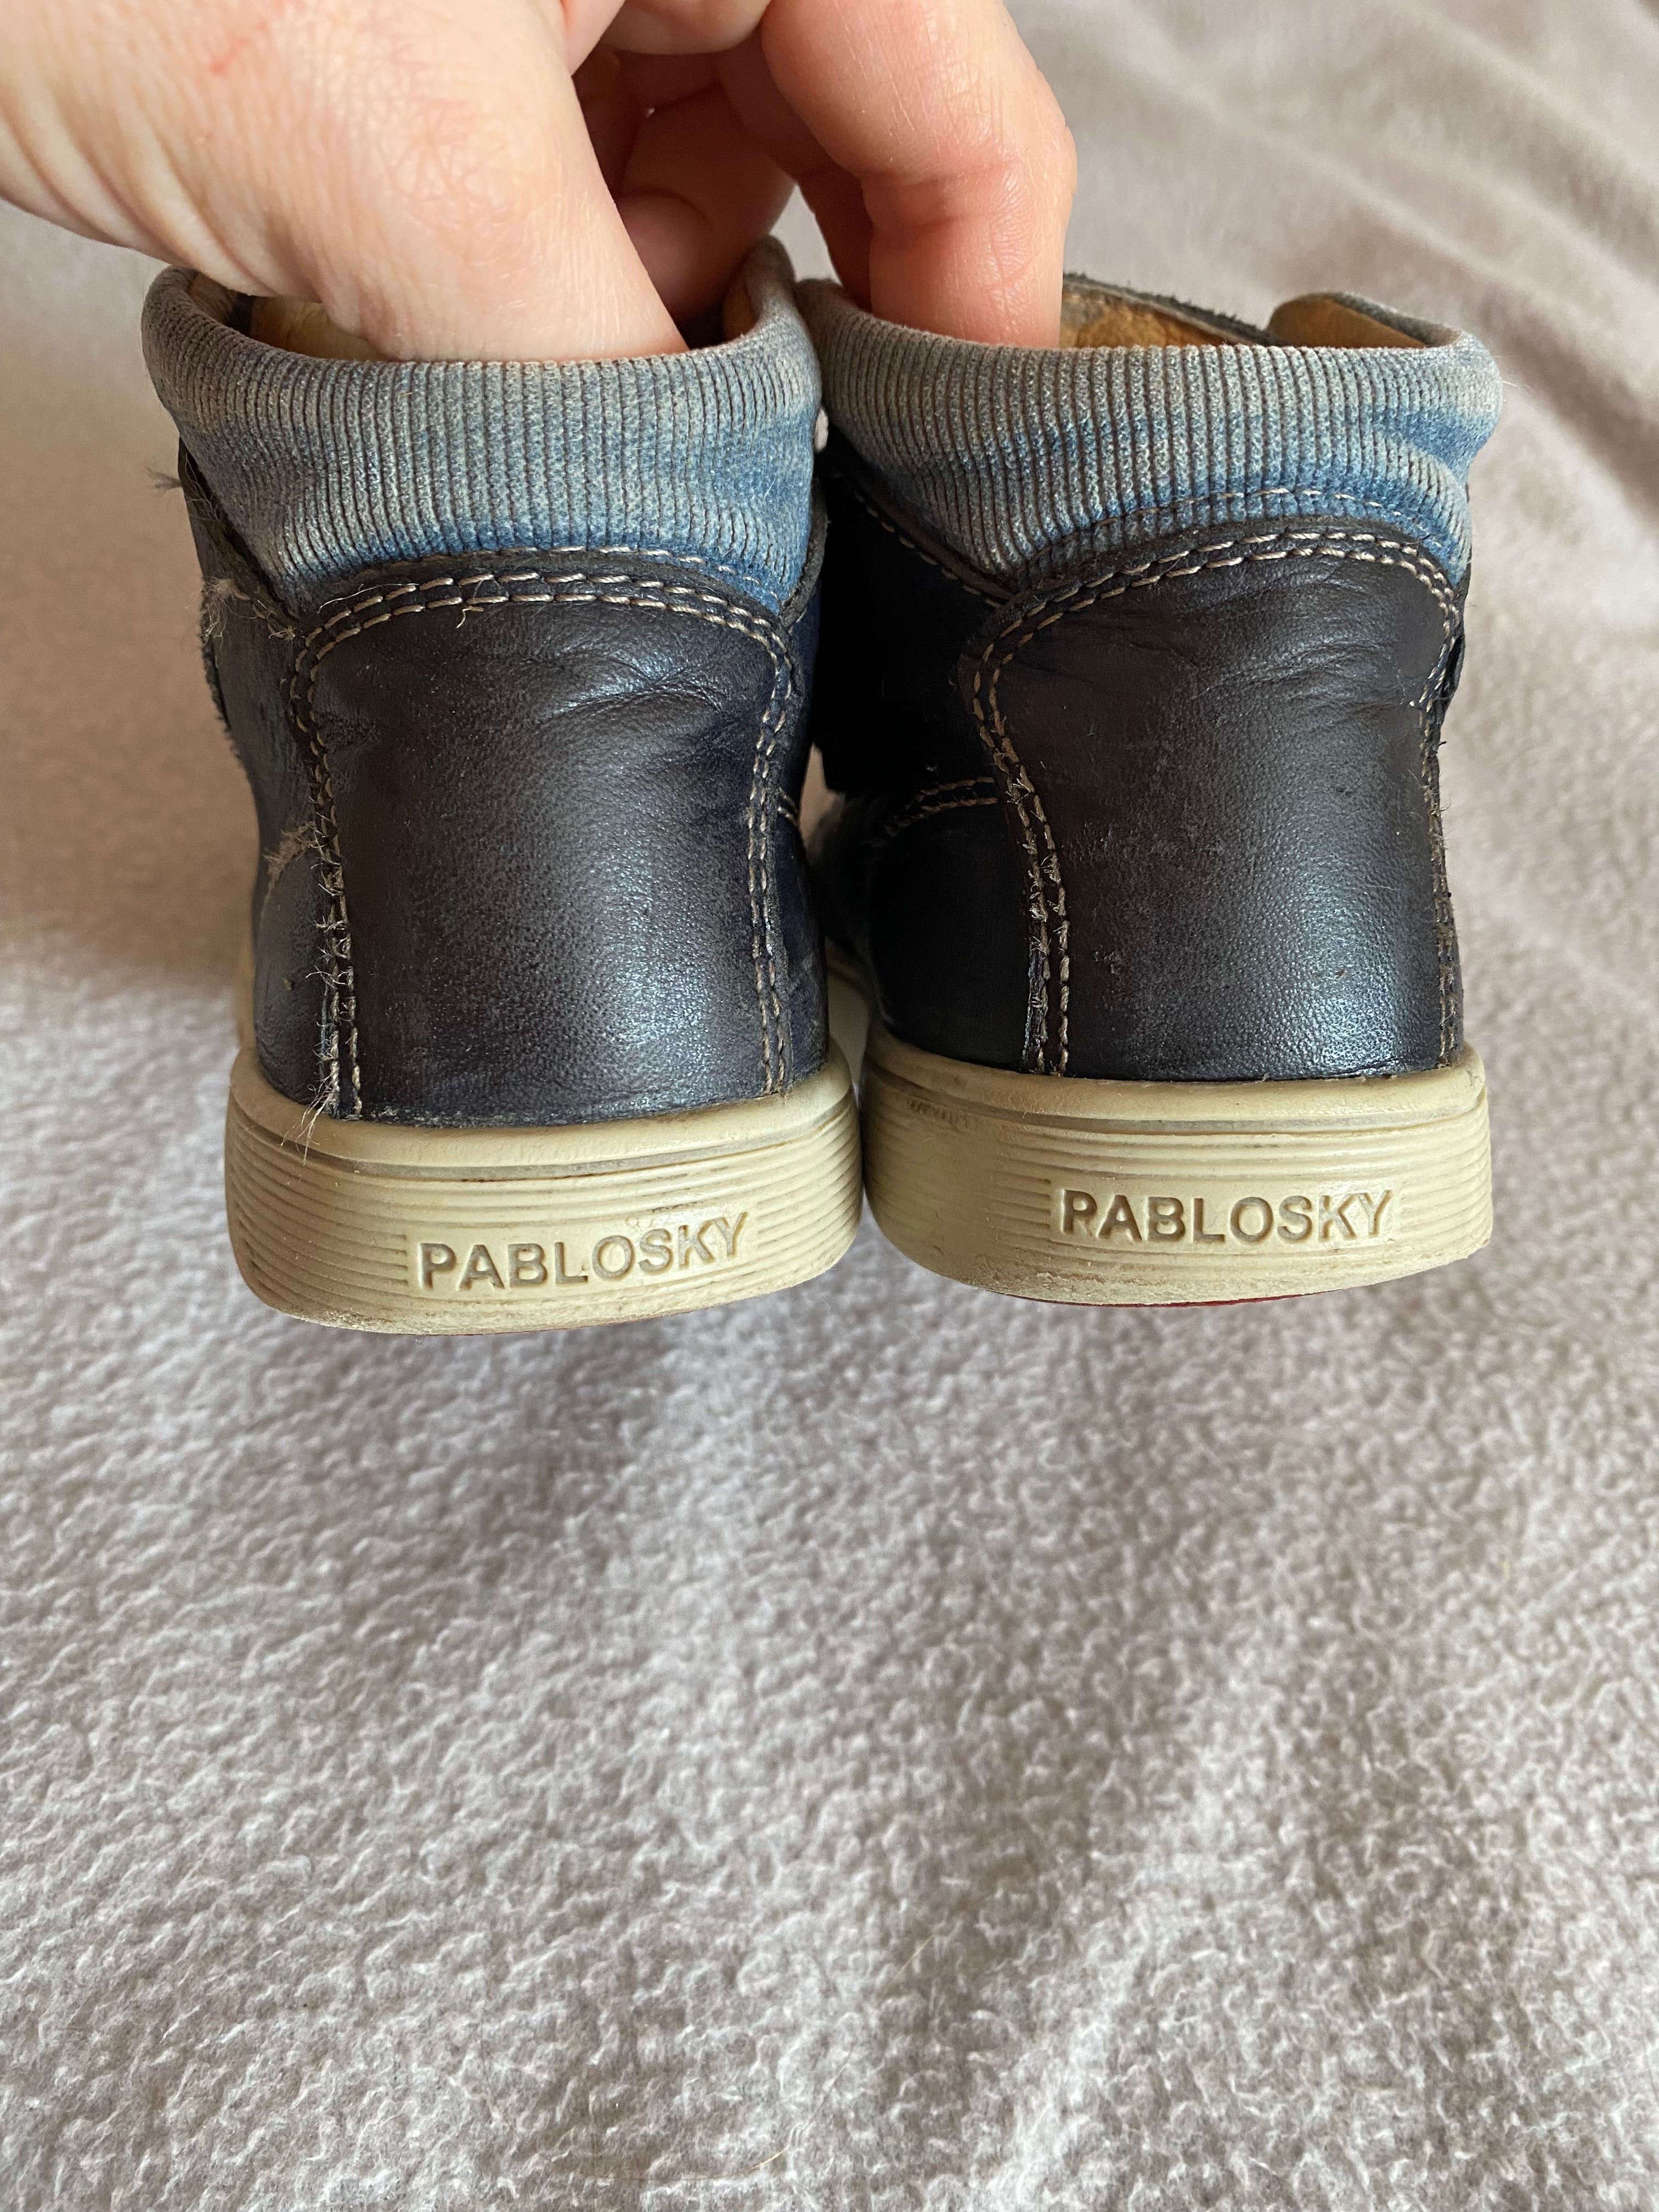 Pablovsky весняні шкіряні черевики Ботинки чоботи 28 розмір